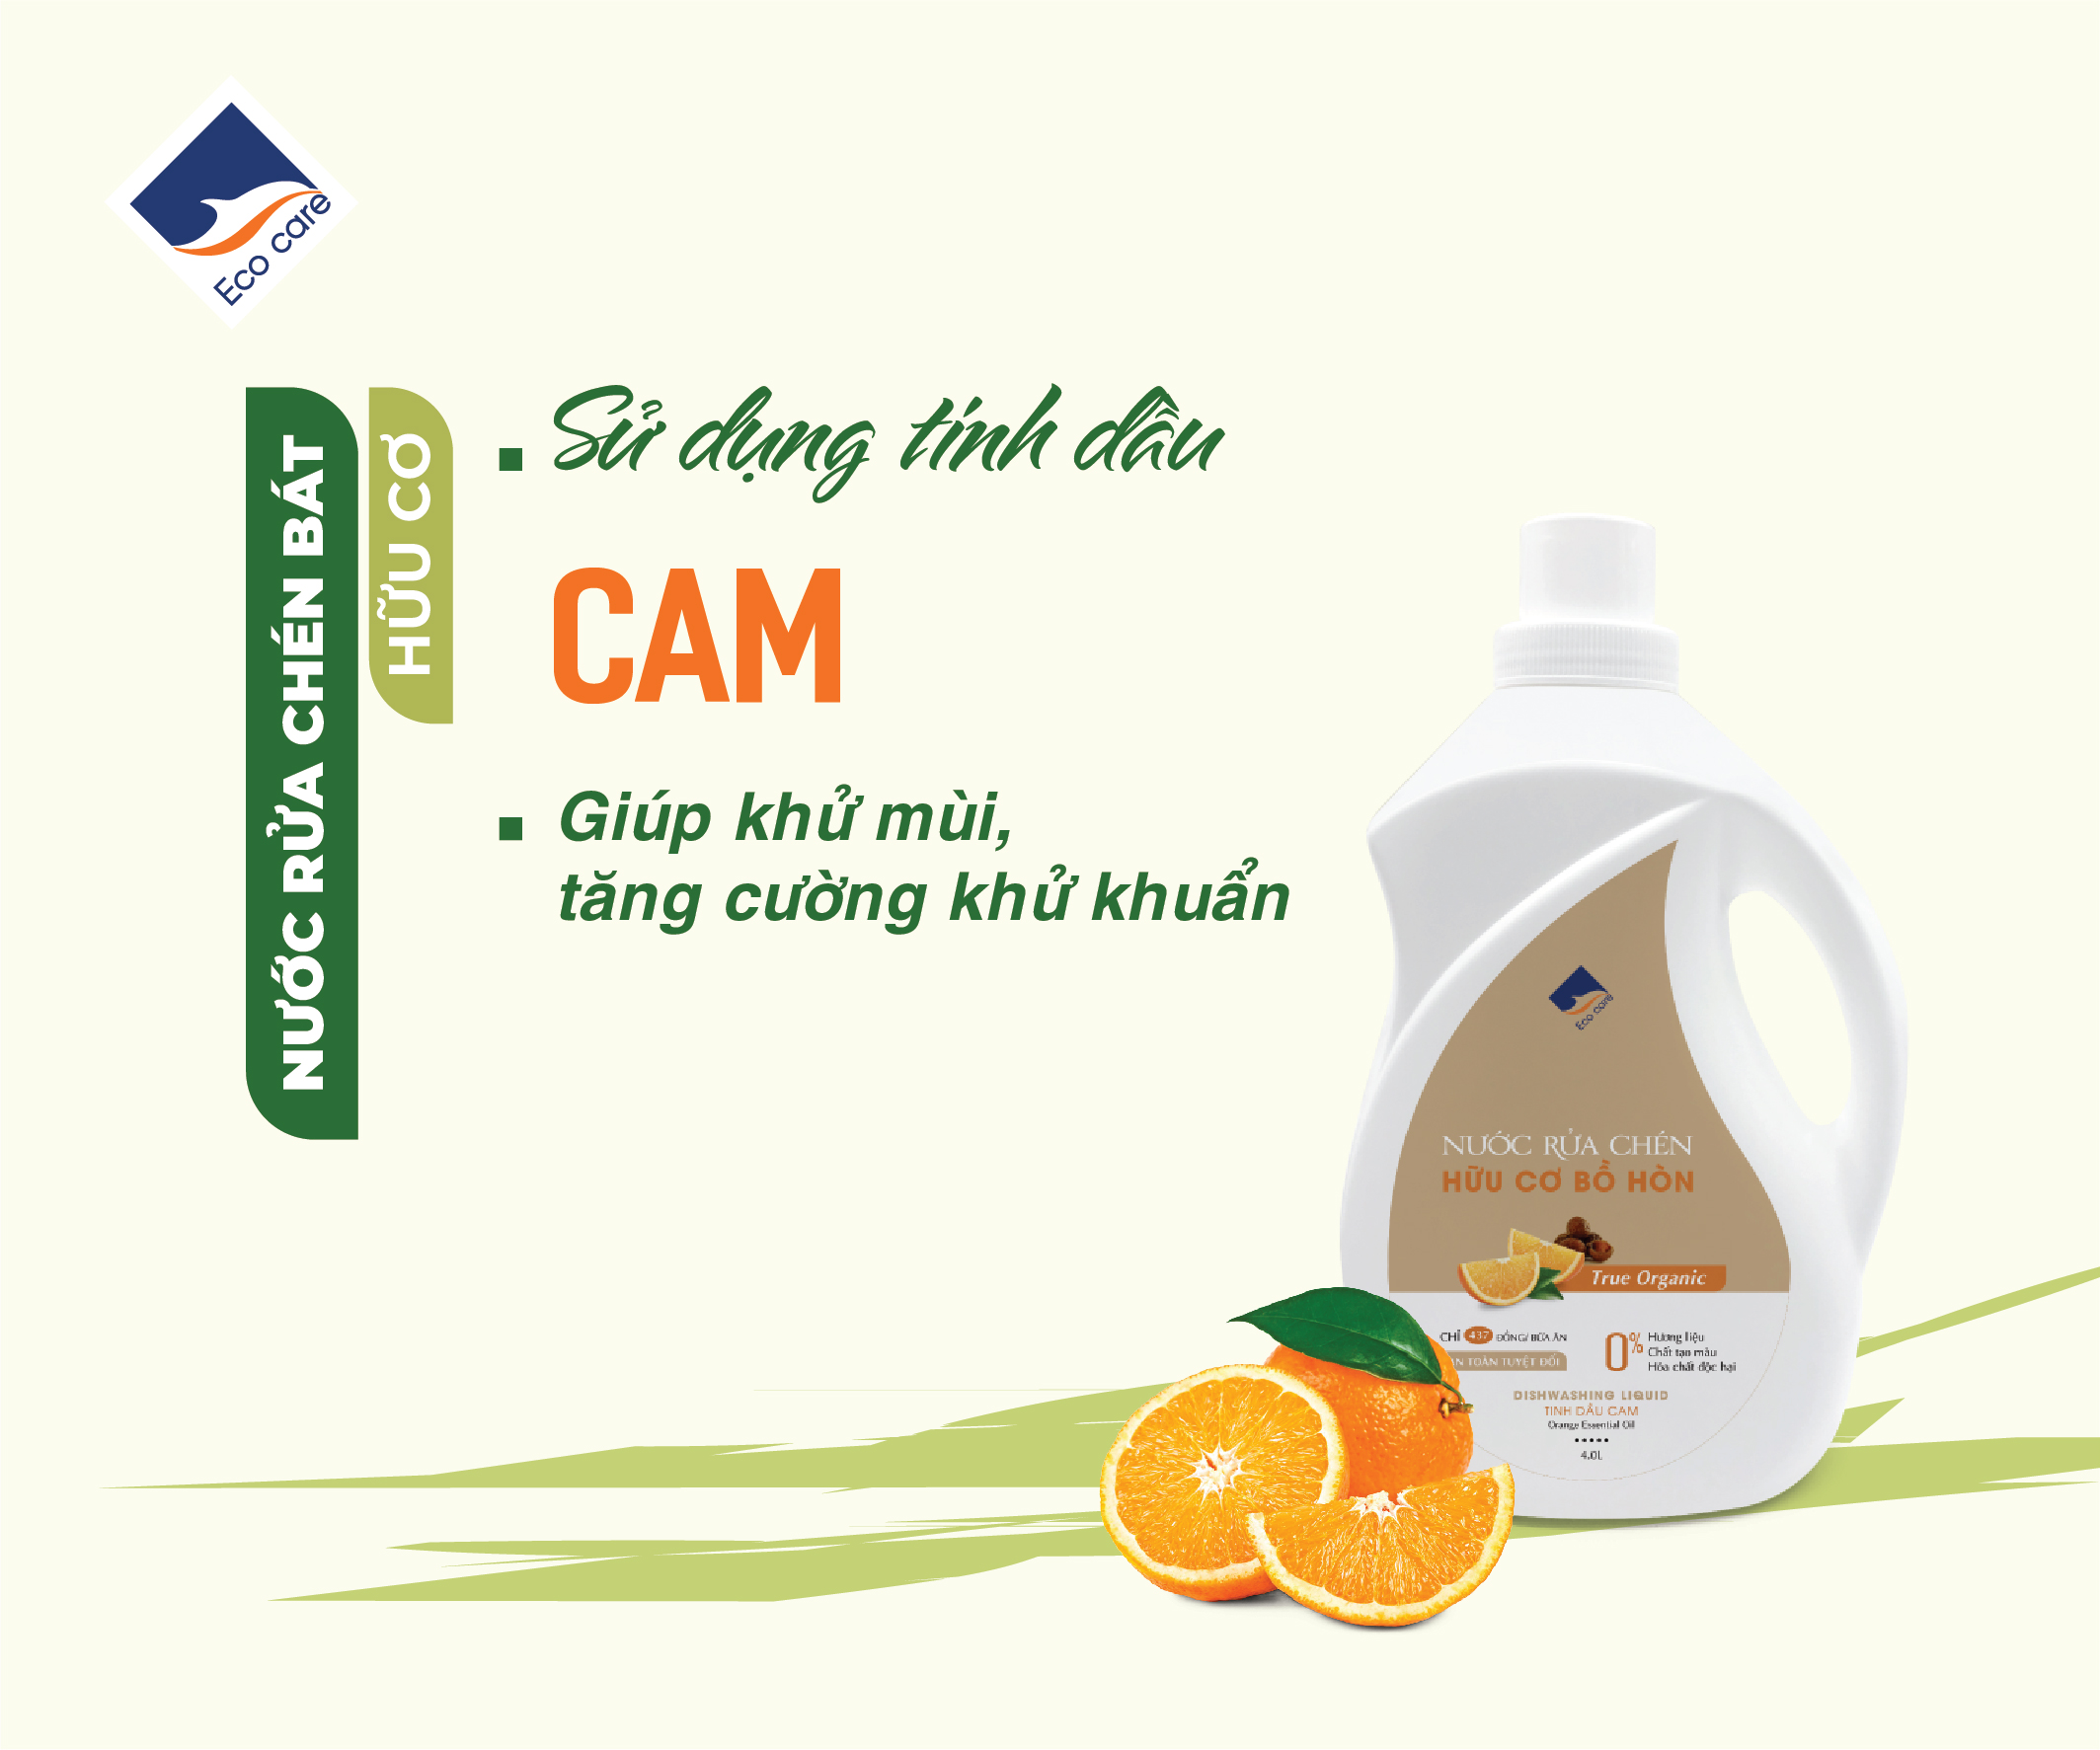 Nước rửa chén hữu cơ Bồ hòn tinh dầu Cam 4L